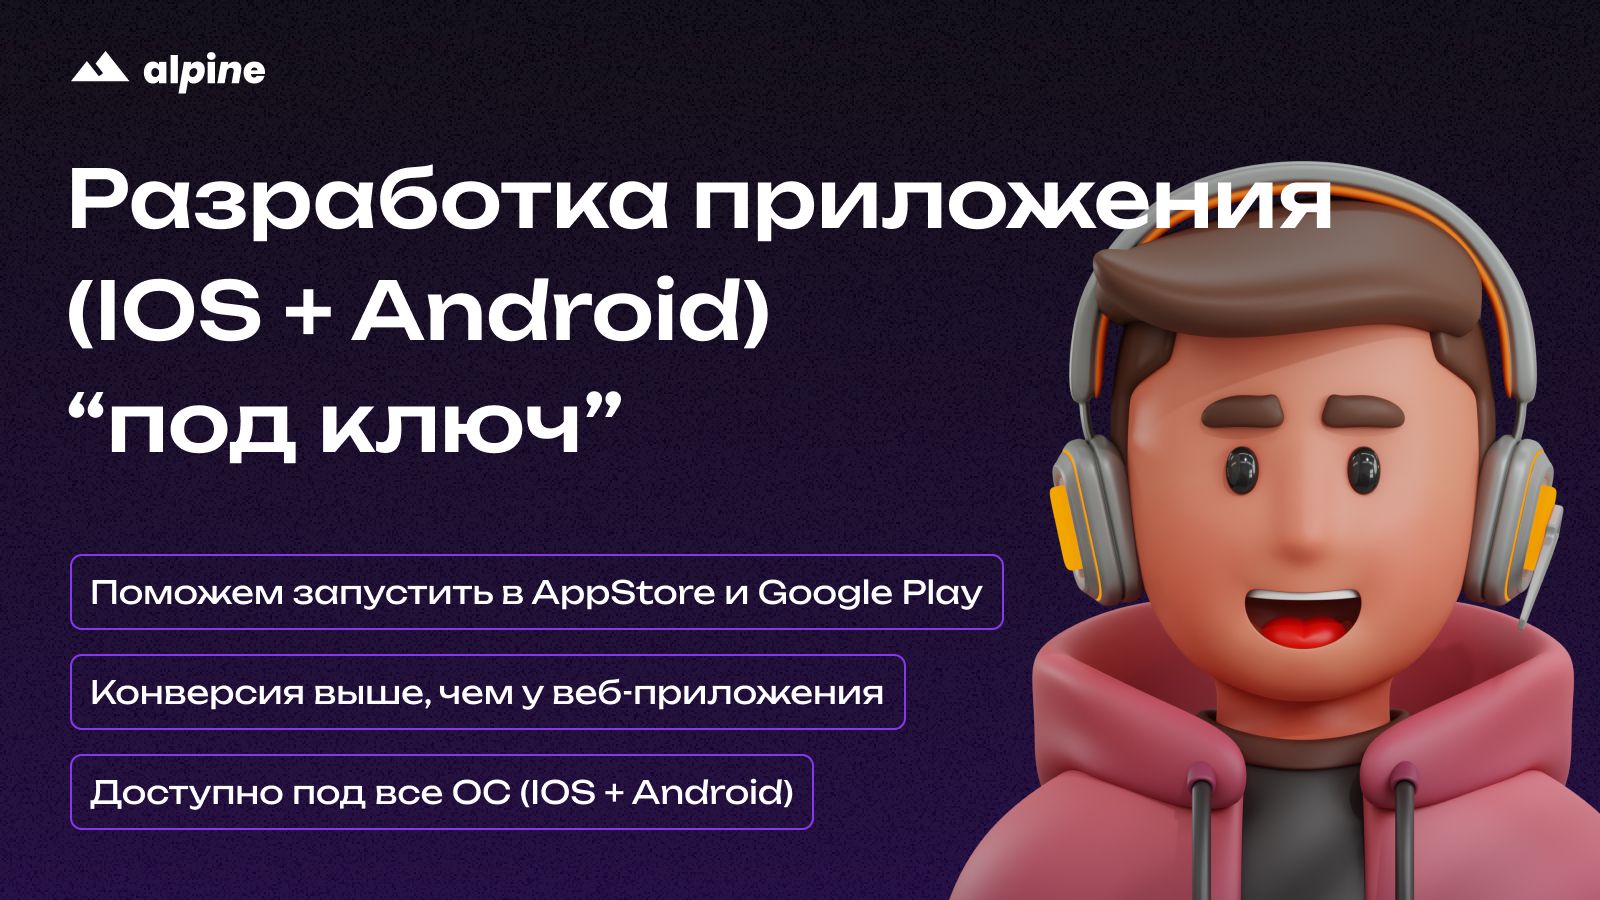 Разработка приложения (IOS + Android) "под ключ"